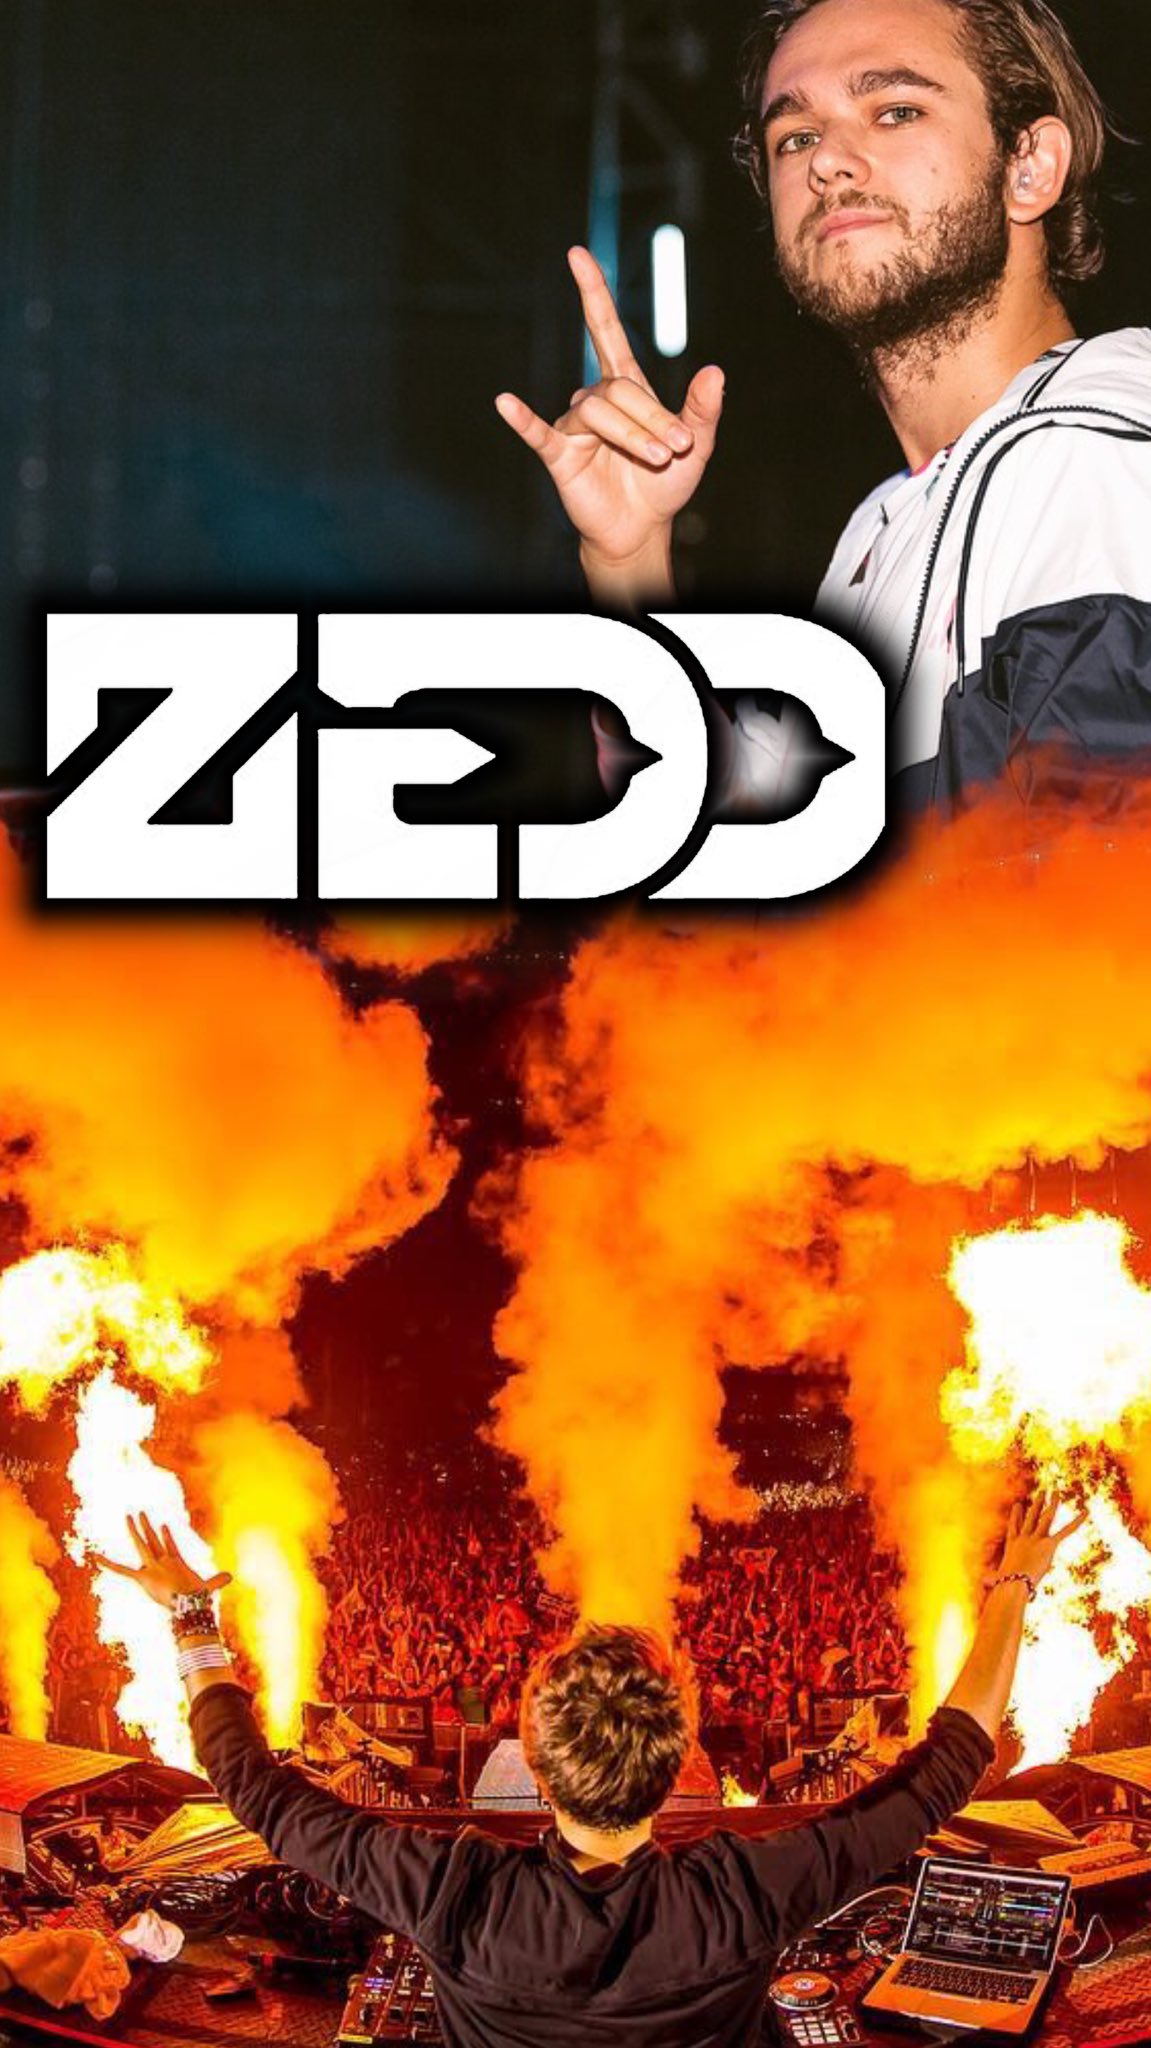 Dj壁紙 Zedd作りました Zedd Dj壁紙 リクエスト募集